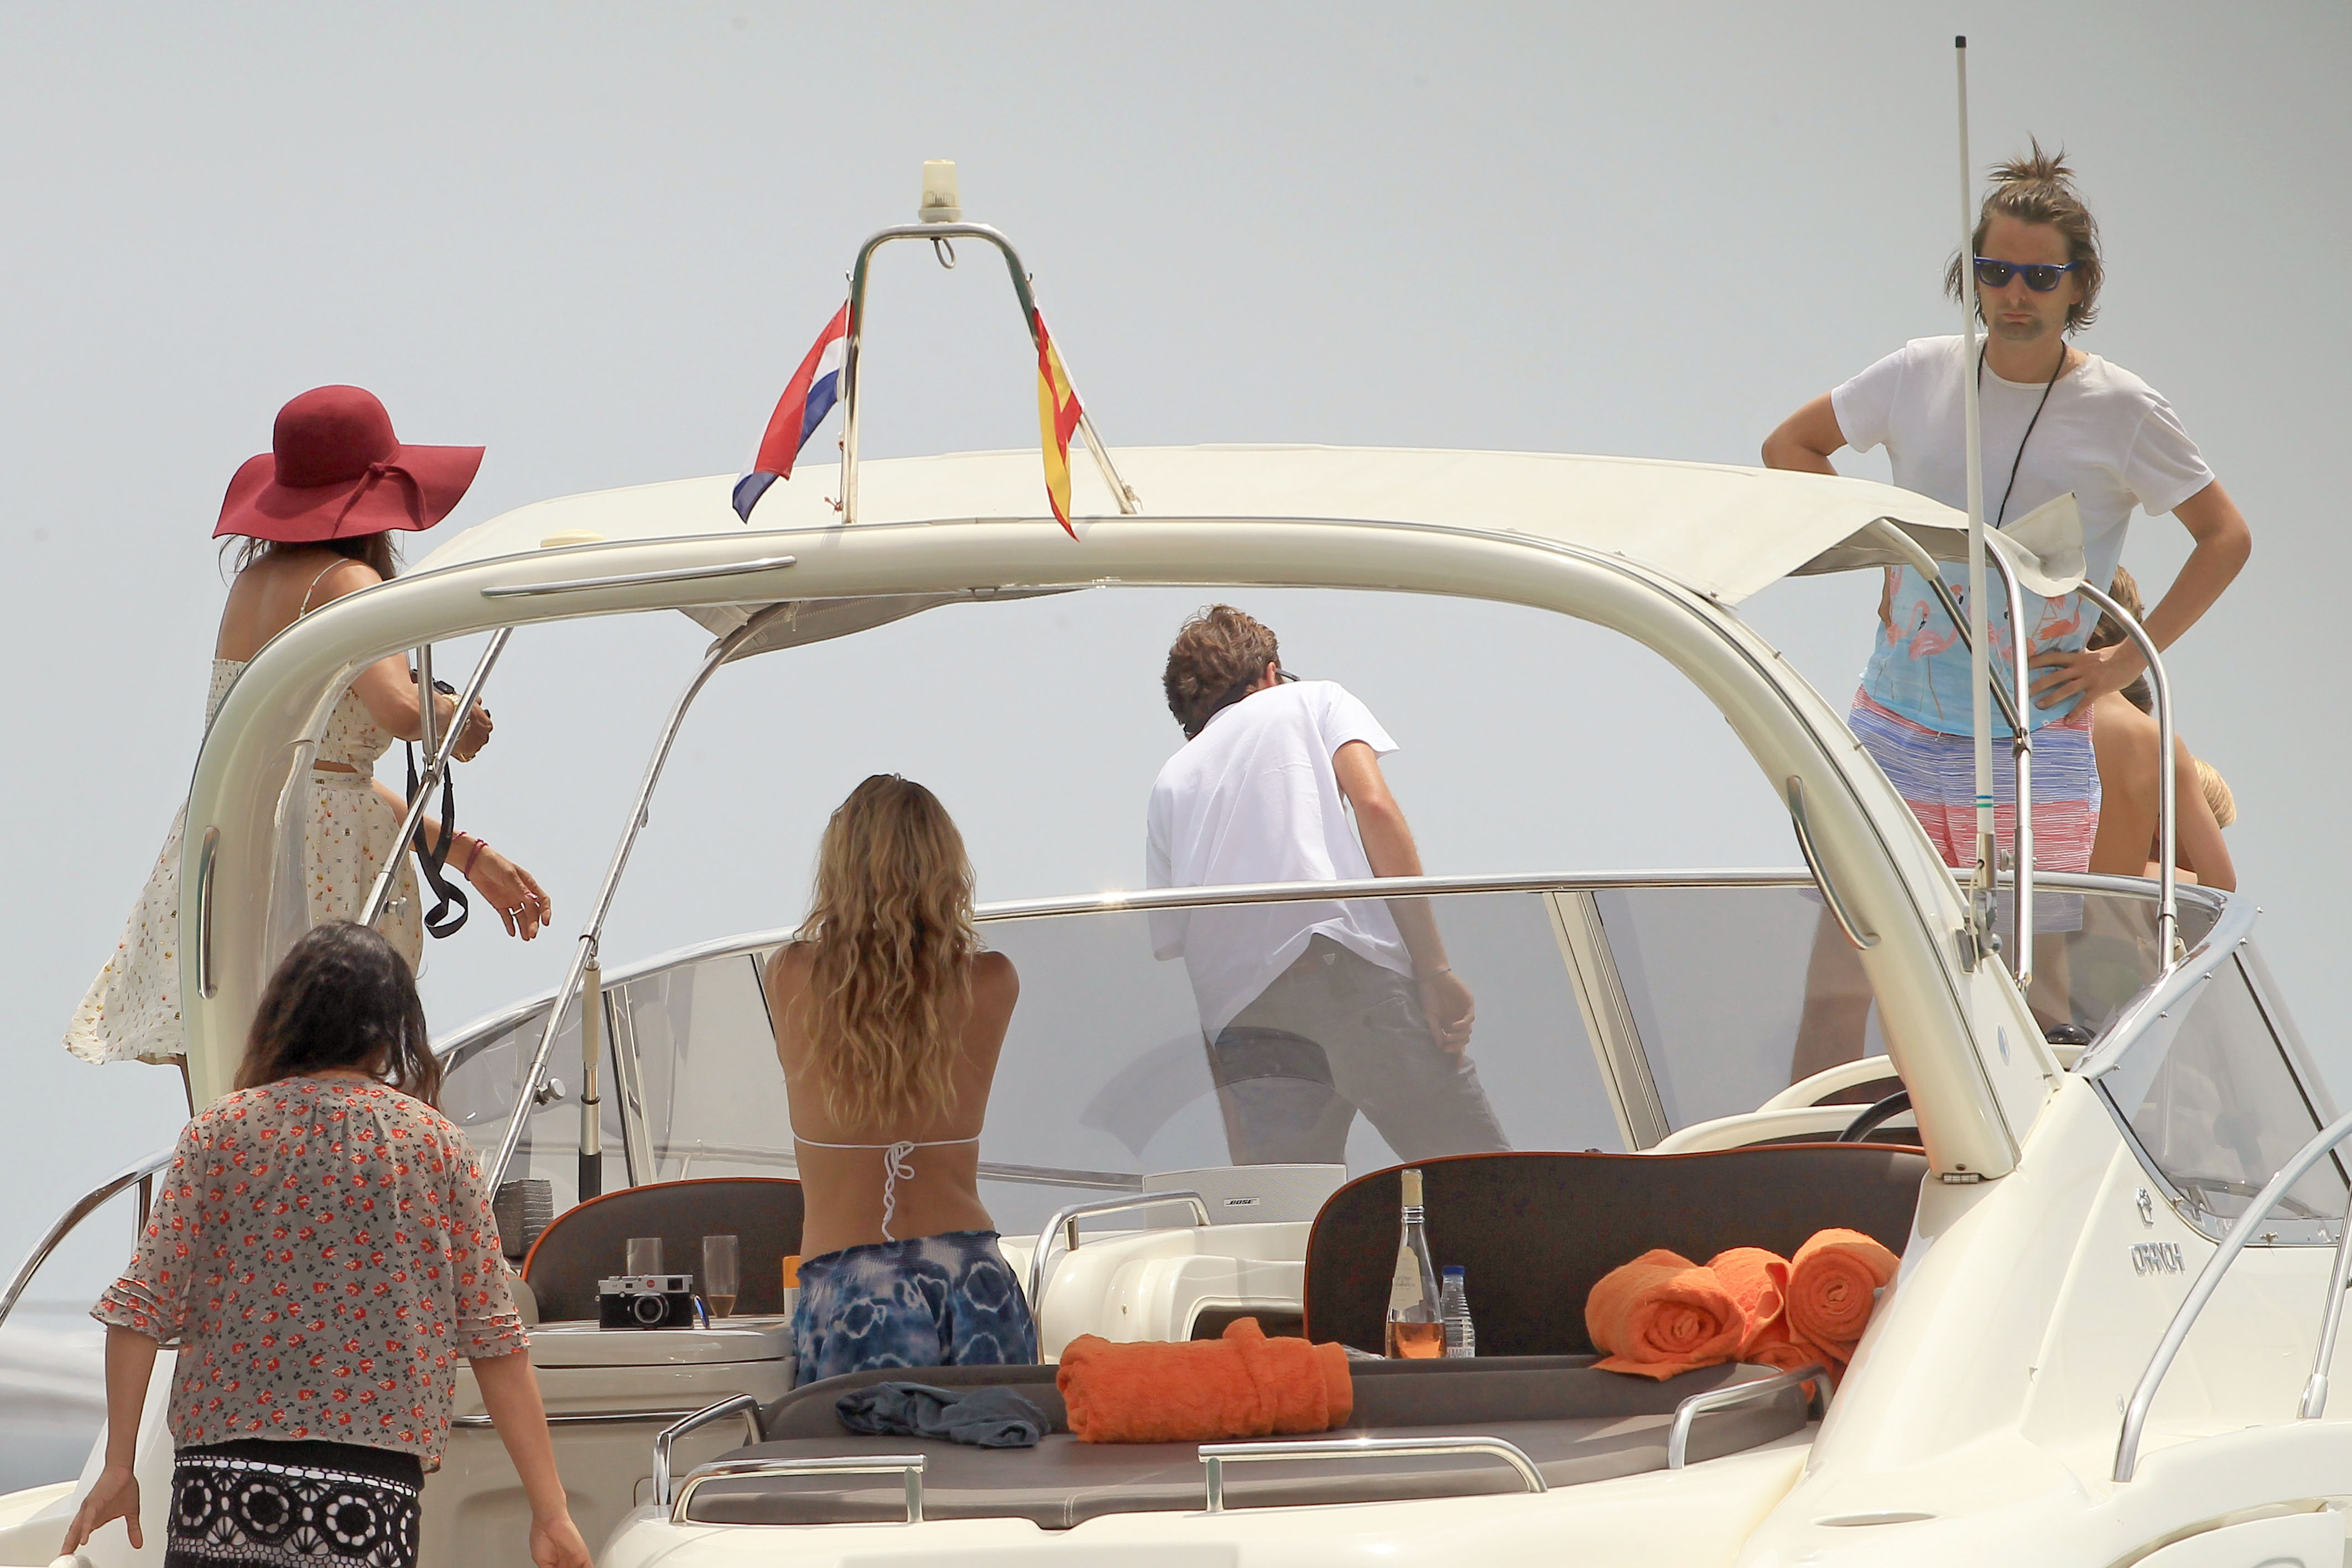 Kate_Hudson_wearing_sexy_bikini_on_a_boat_in_Ibiza_11x_UHQ_14.jpg